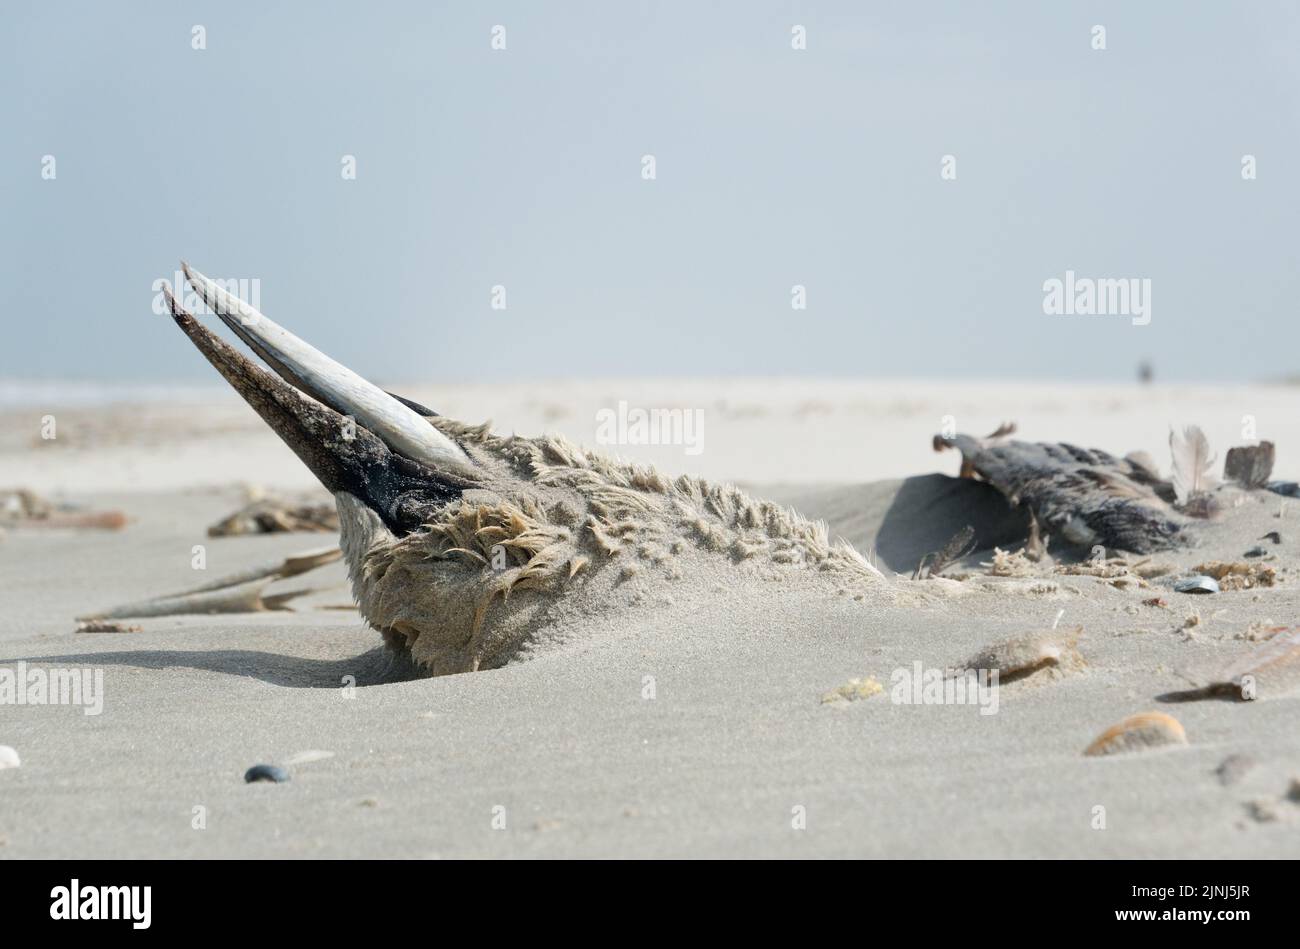 El ganso muerto del norte, probablemente víctima de la gripe aviar, se lavó en la playa y parcialmente enterrado bajo la arena Foto de stock